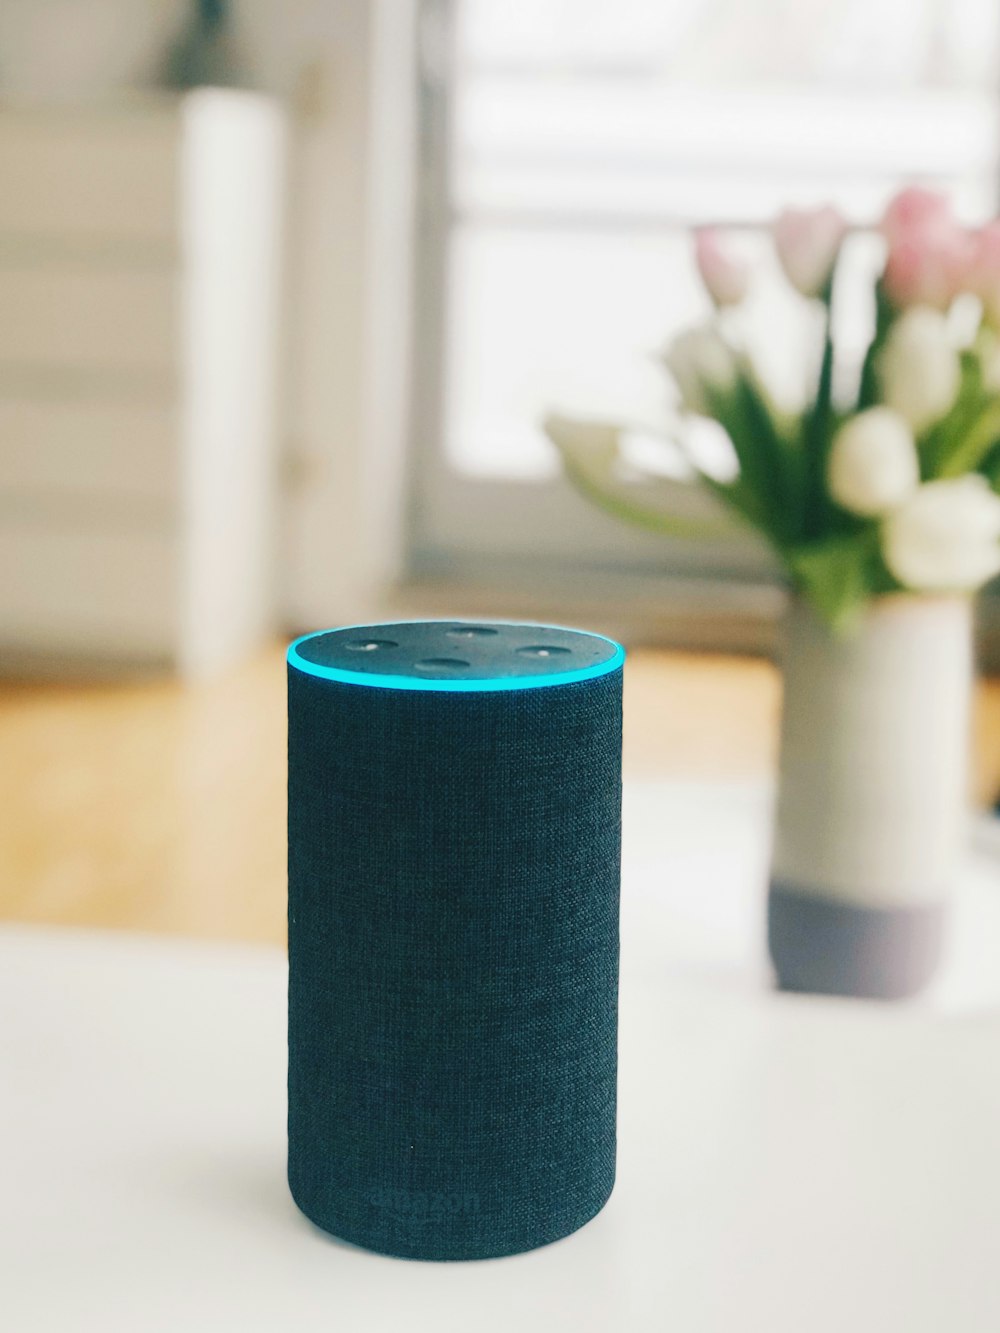 1st gen Amazon Echo speaker